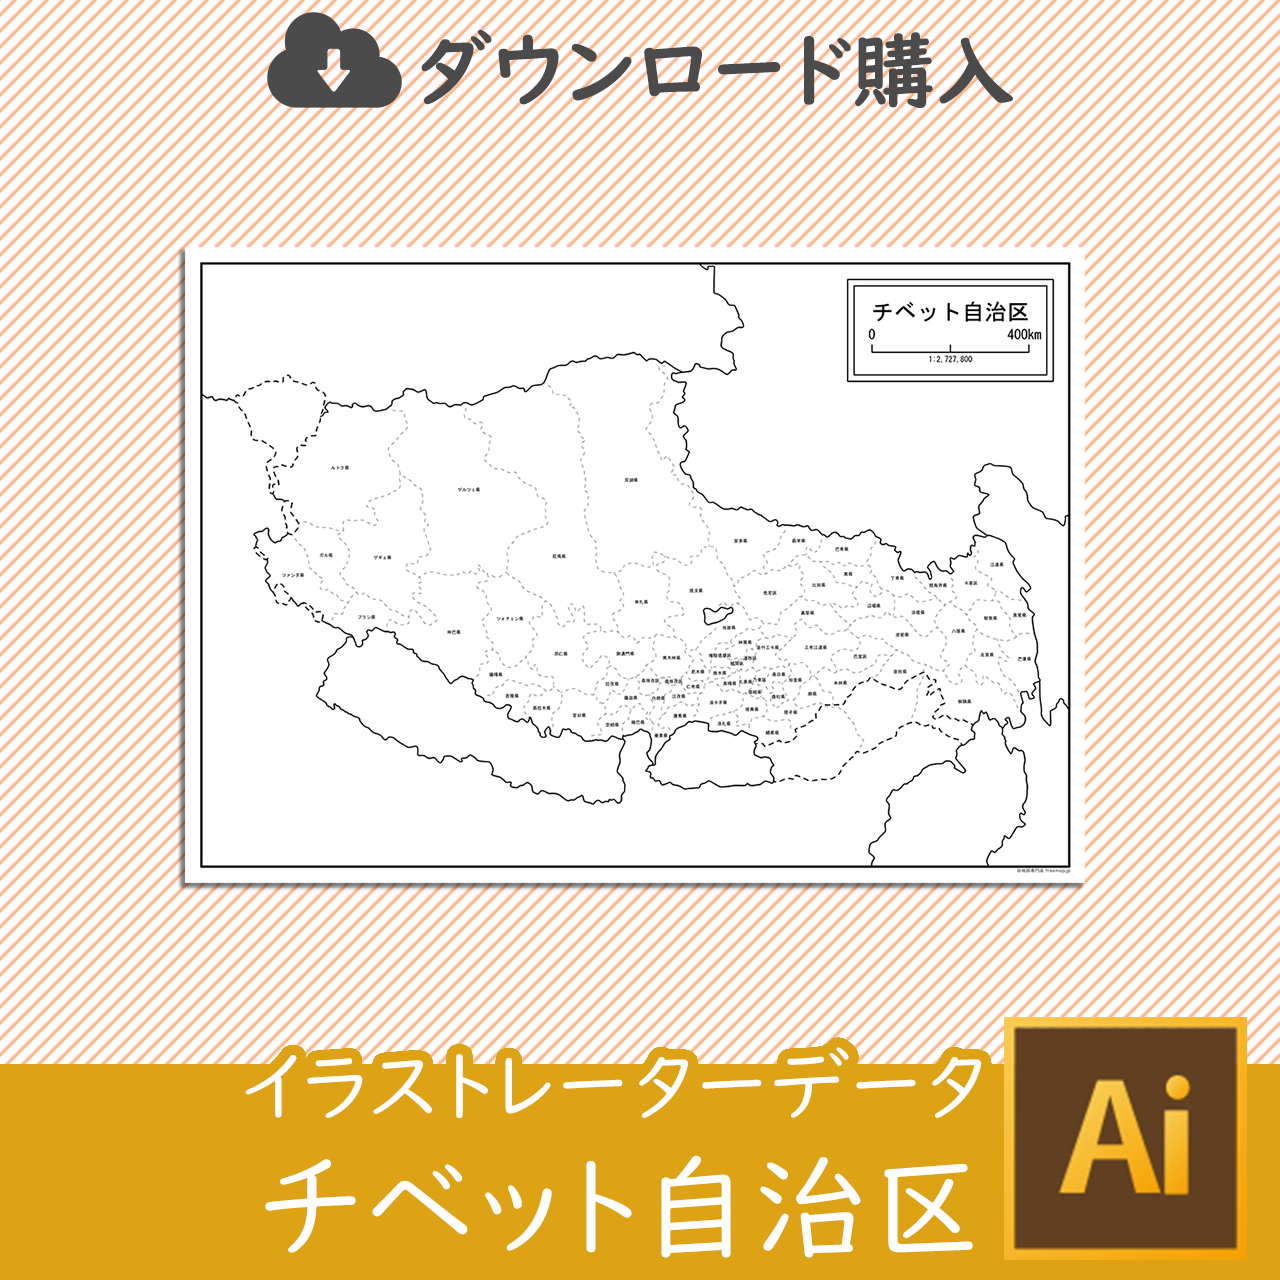 チベット自治区の白地図データのサムネイル画像